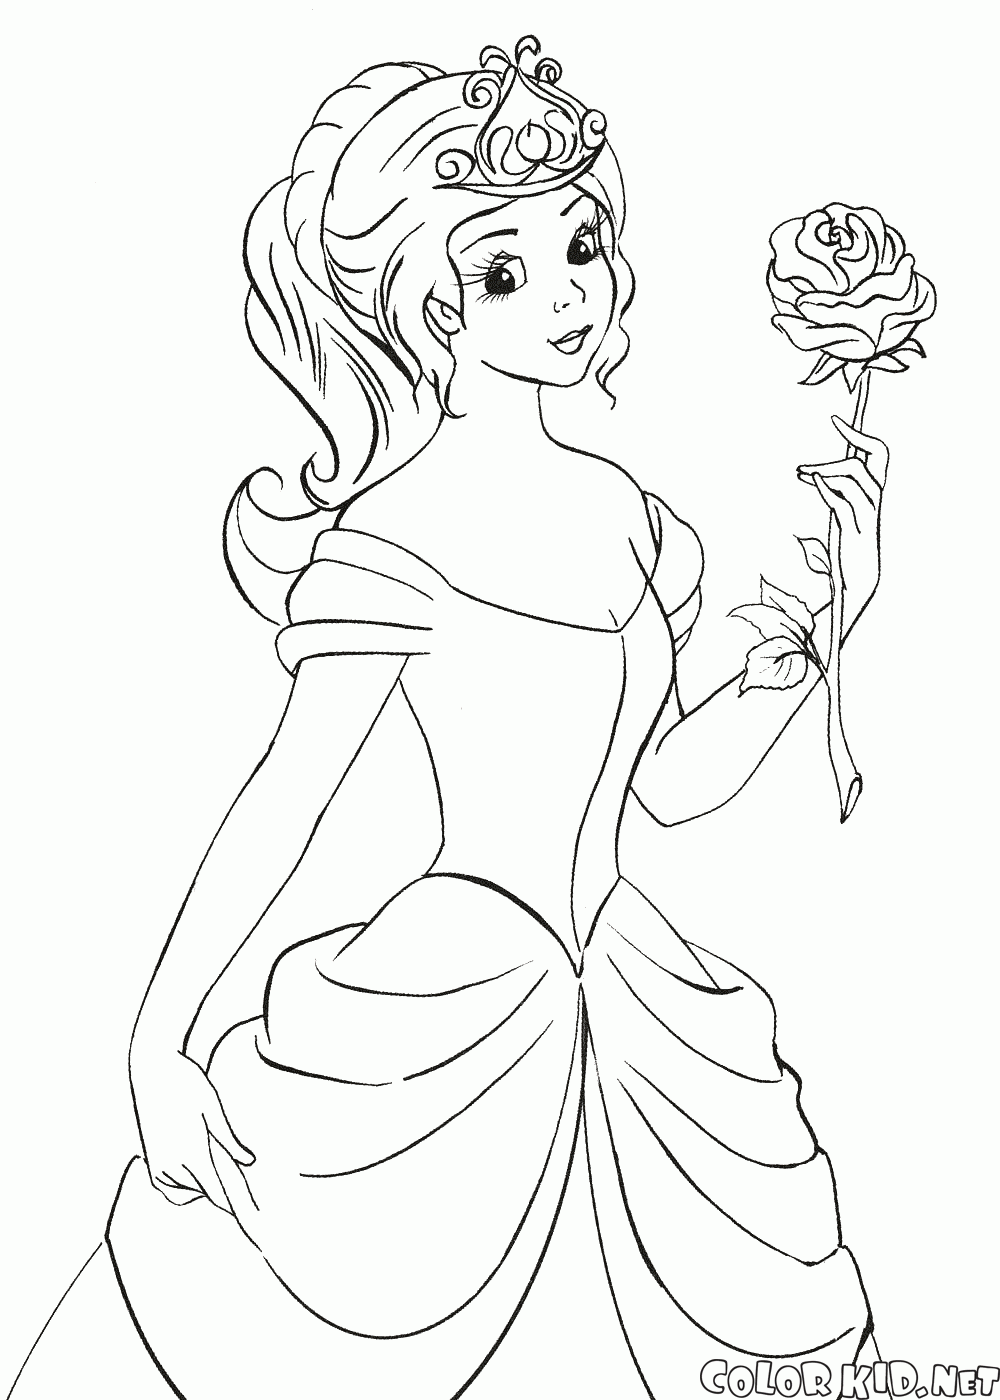 Księżniczka trzyma różę